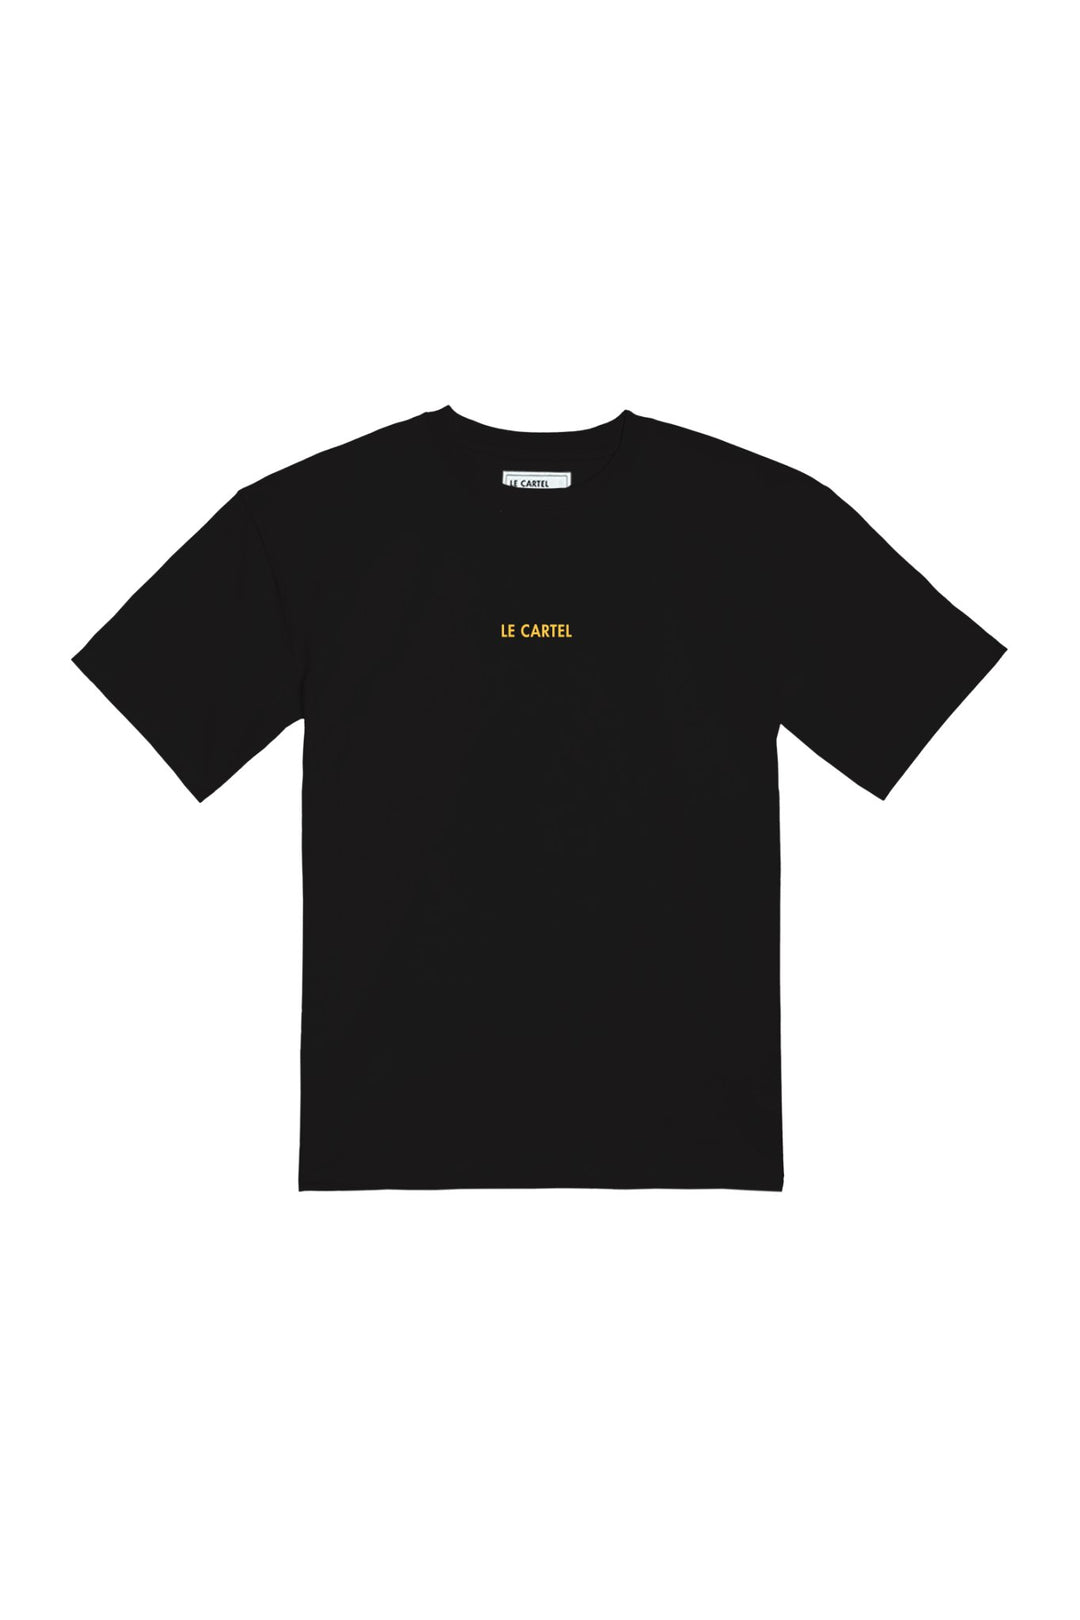 VÉGÉTÊTE・T-shirt unisexe・Noir - Le Cartel